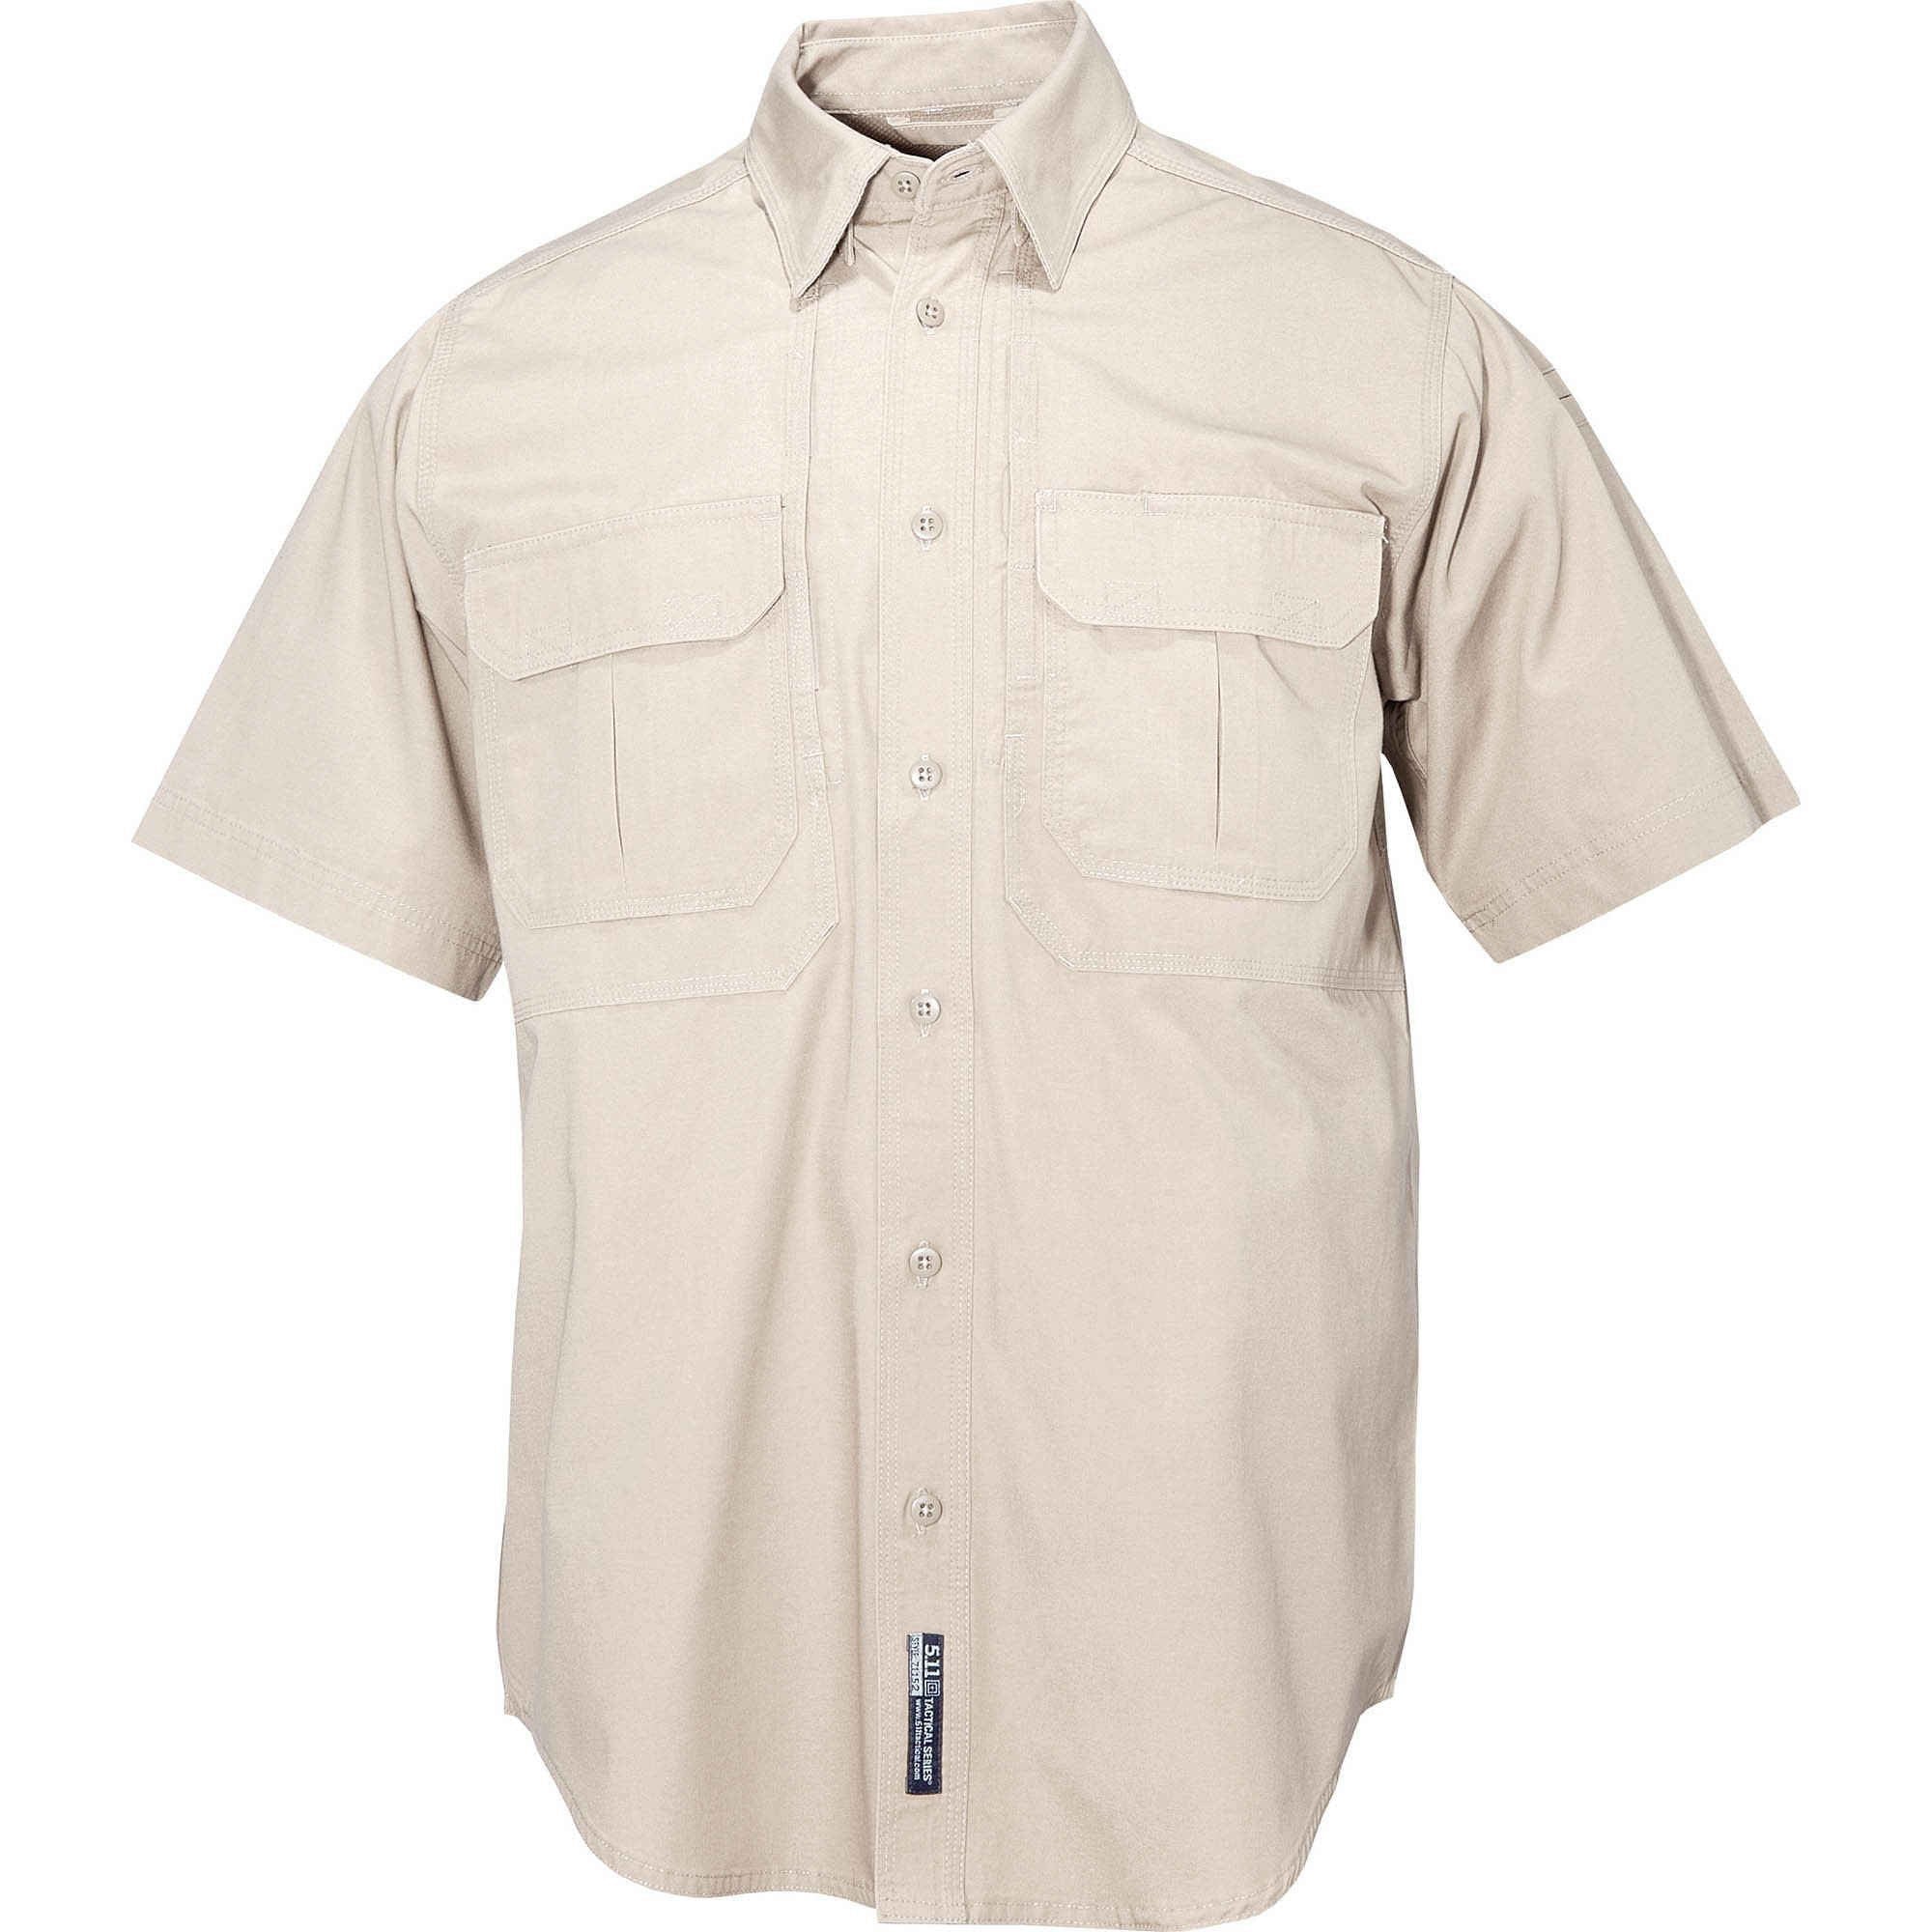 5.11 Tactical Men's Short Sleeve Tactical Shirt Shirts 5.11 Tactical Khaki Extra Small Tactical Gear Supplier Tactical Distributors Australia